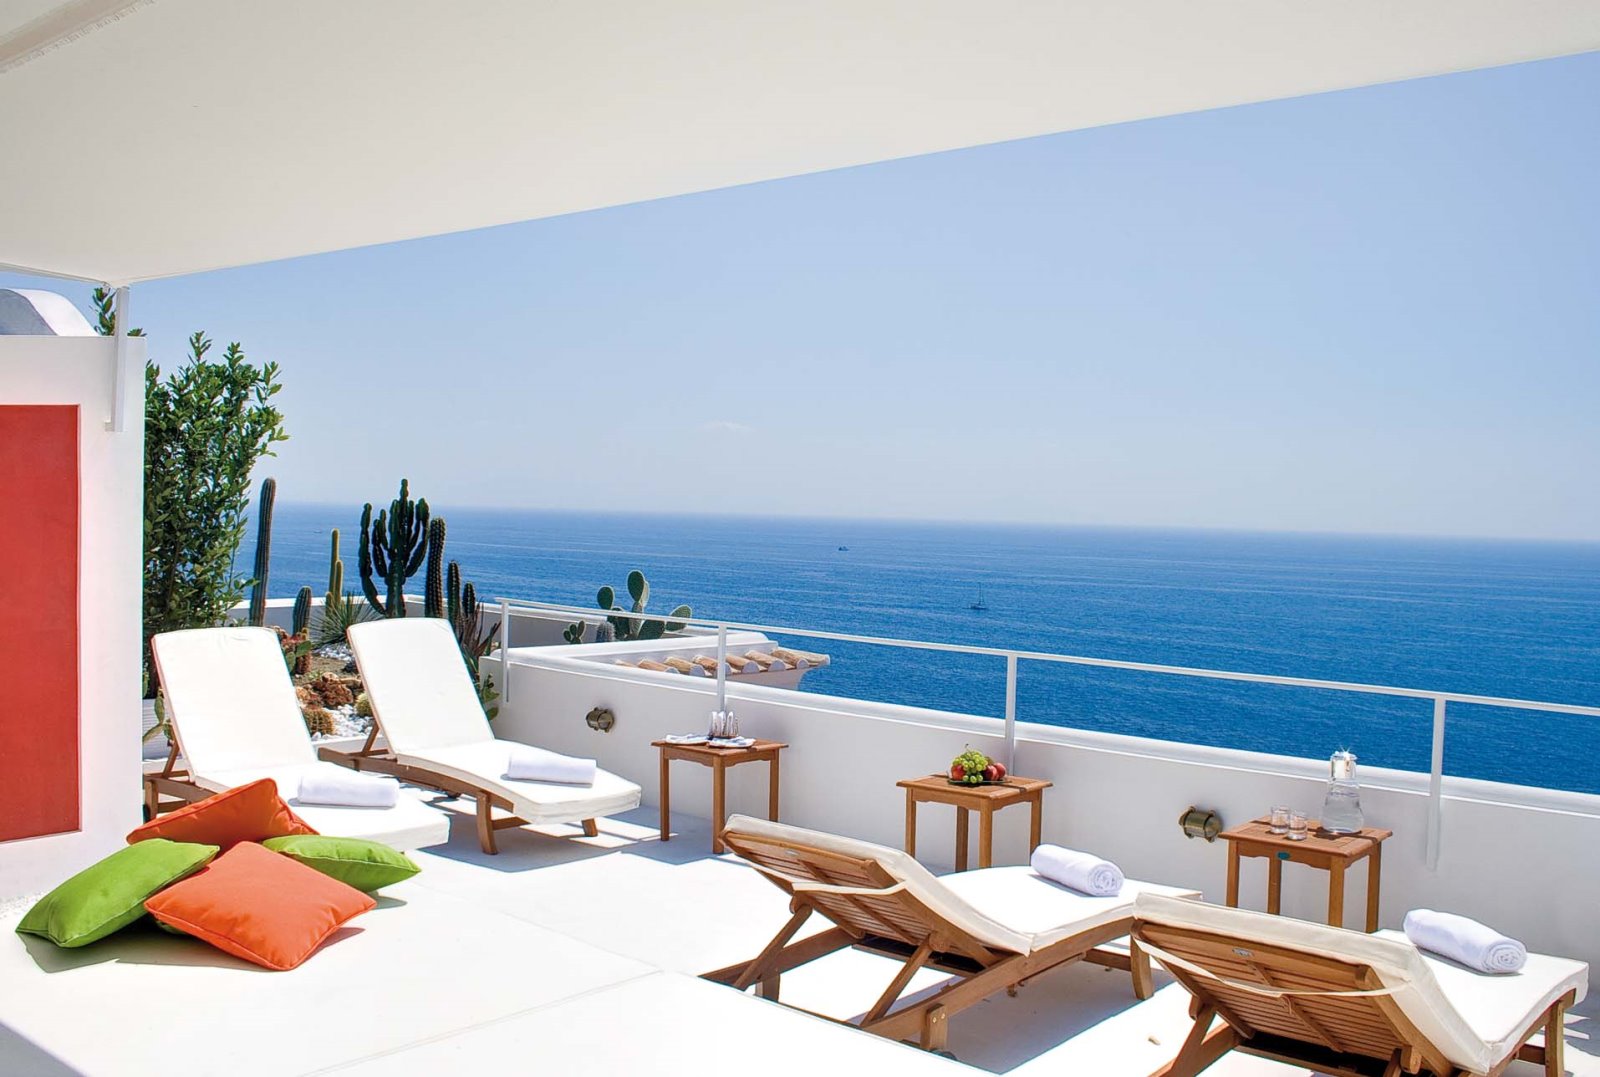 Terrace with sea view at Villa di Praiano, Amalfi Coast